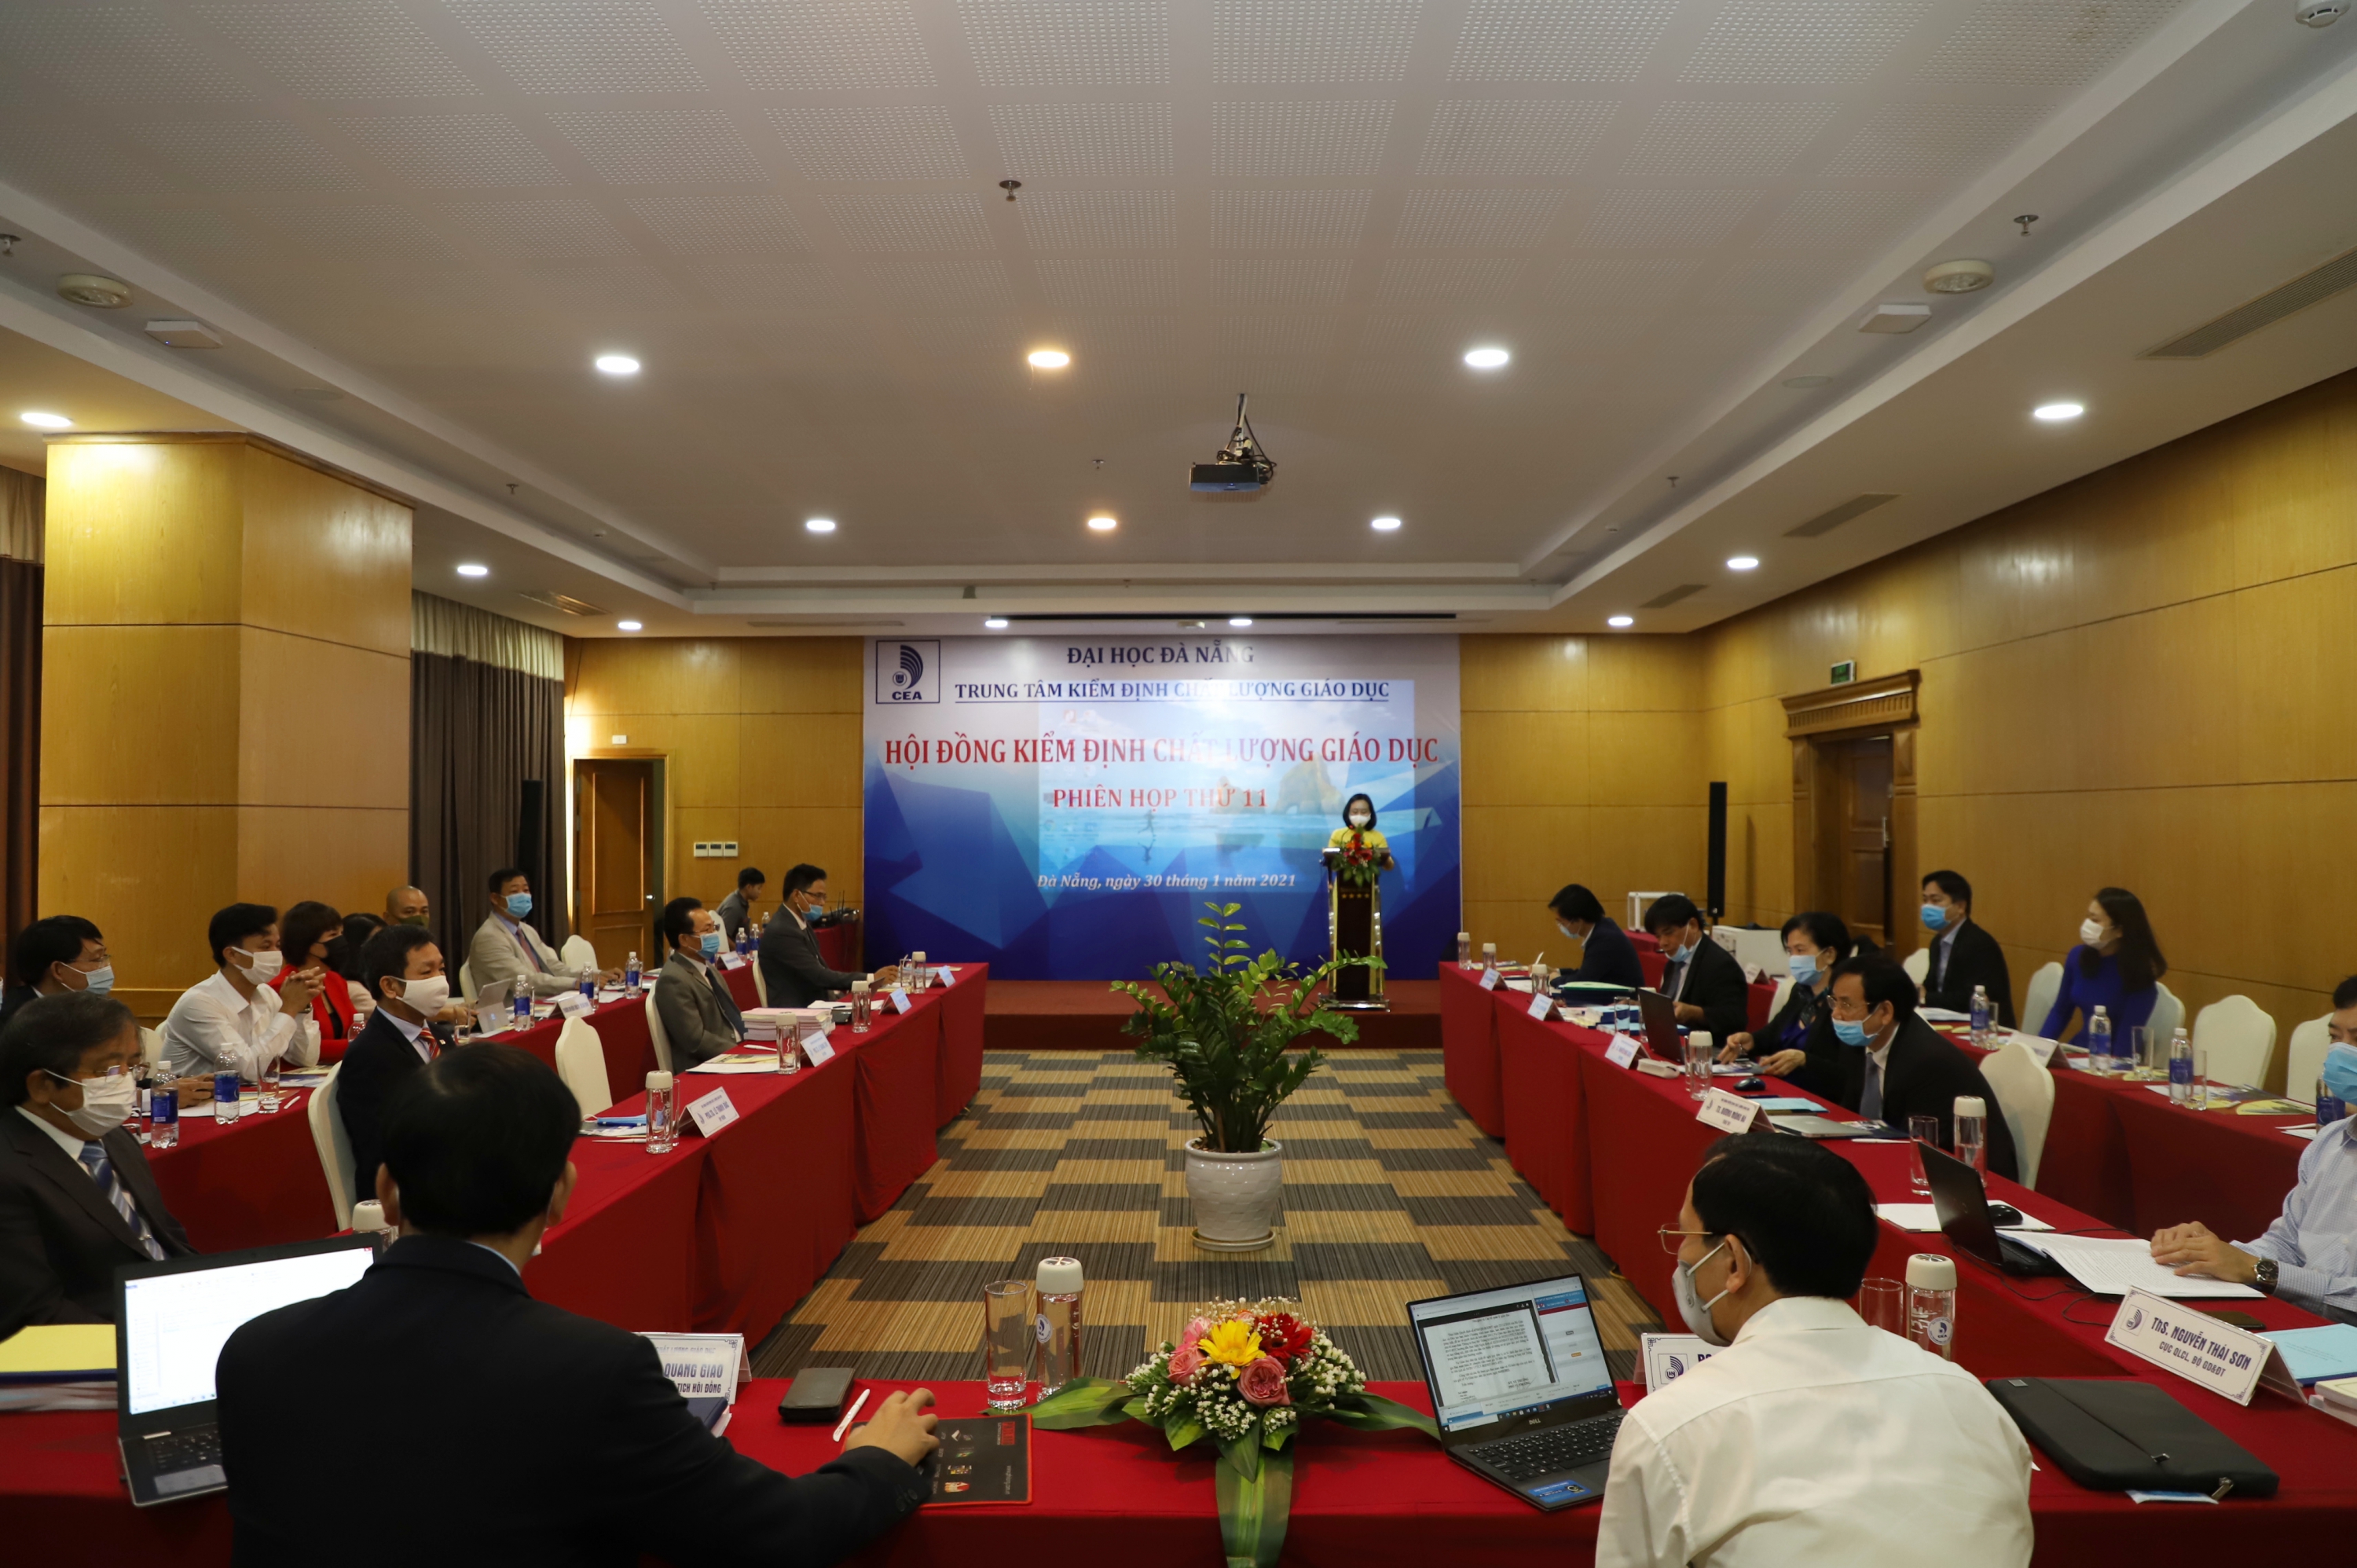 Hội đồng Kiểm định chất lượng giáo dục của Trung tâm Kiểm định chất lượng giáo dục – Đại học Đà Nẵng tổ chức phiên họp lần thứ 11